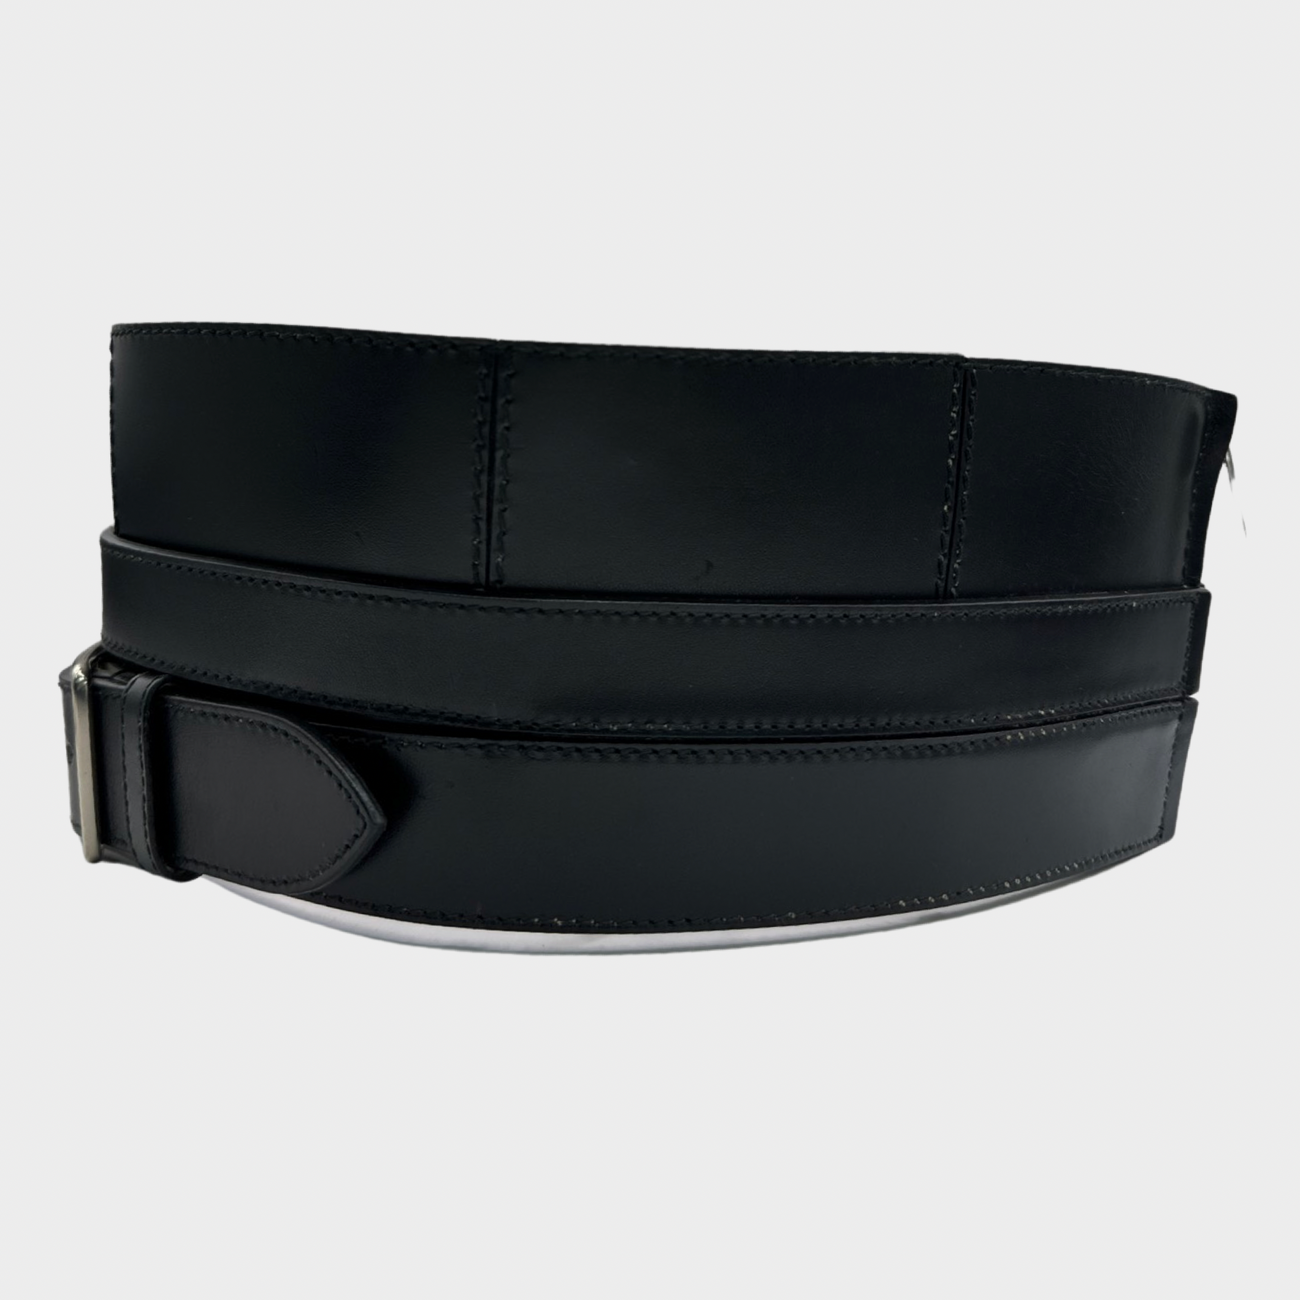 Leather corset belt in black - Alexander Mc Queen